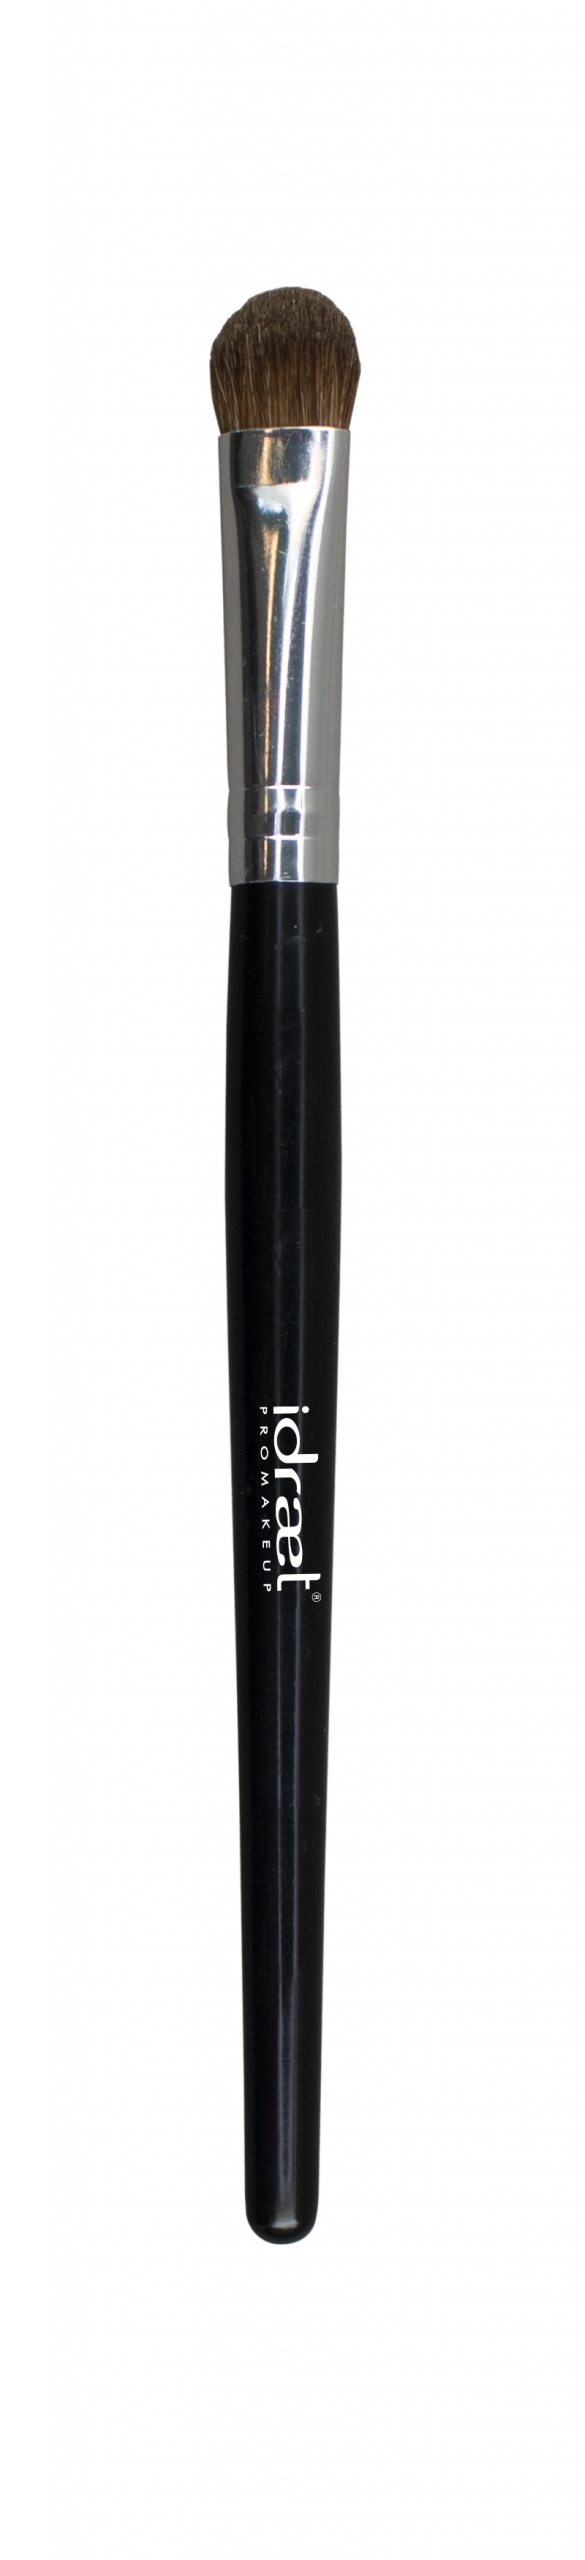 IDRAET - Pincel para Sombra - SP55 Large Eyeshadow Brush